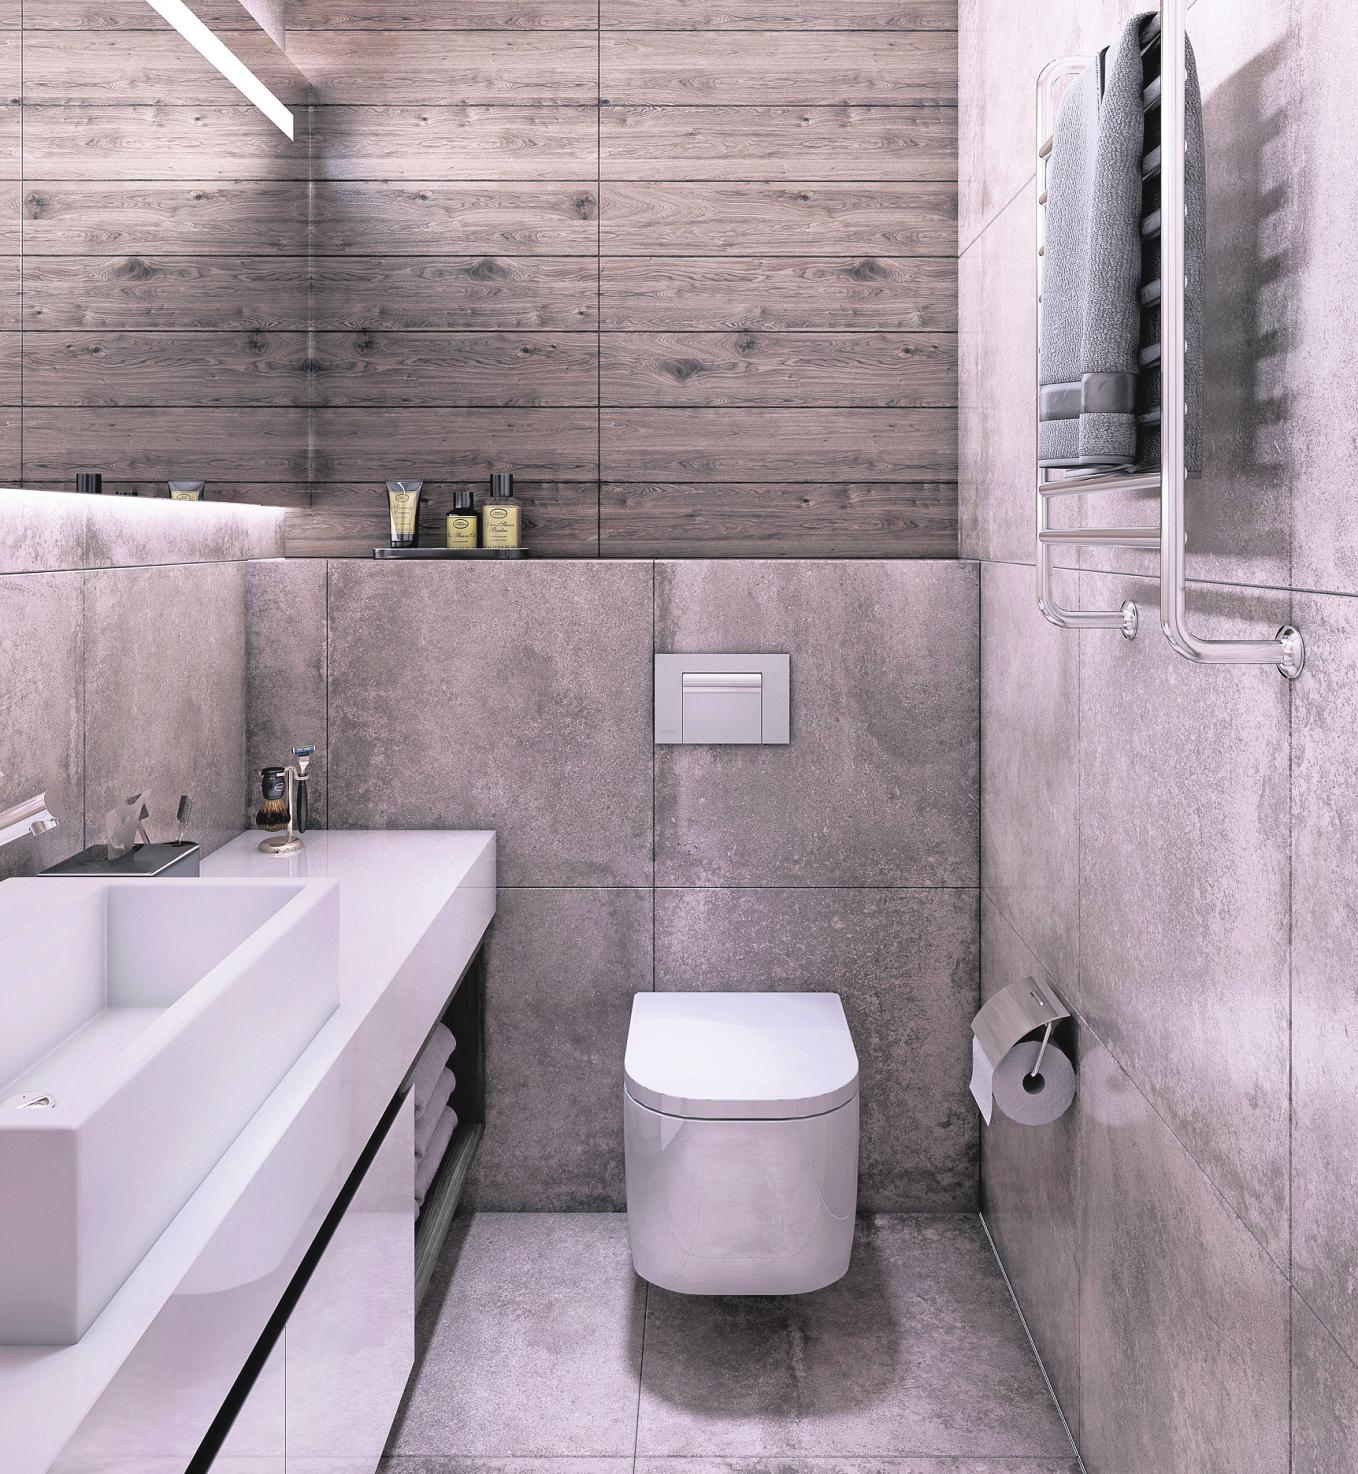 Große Fliesen bringen optische Ruhe in kleine Badezimmer. Beim Stauraum wird jede Nische genutzt. FOTOS: ISTOCK